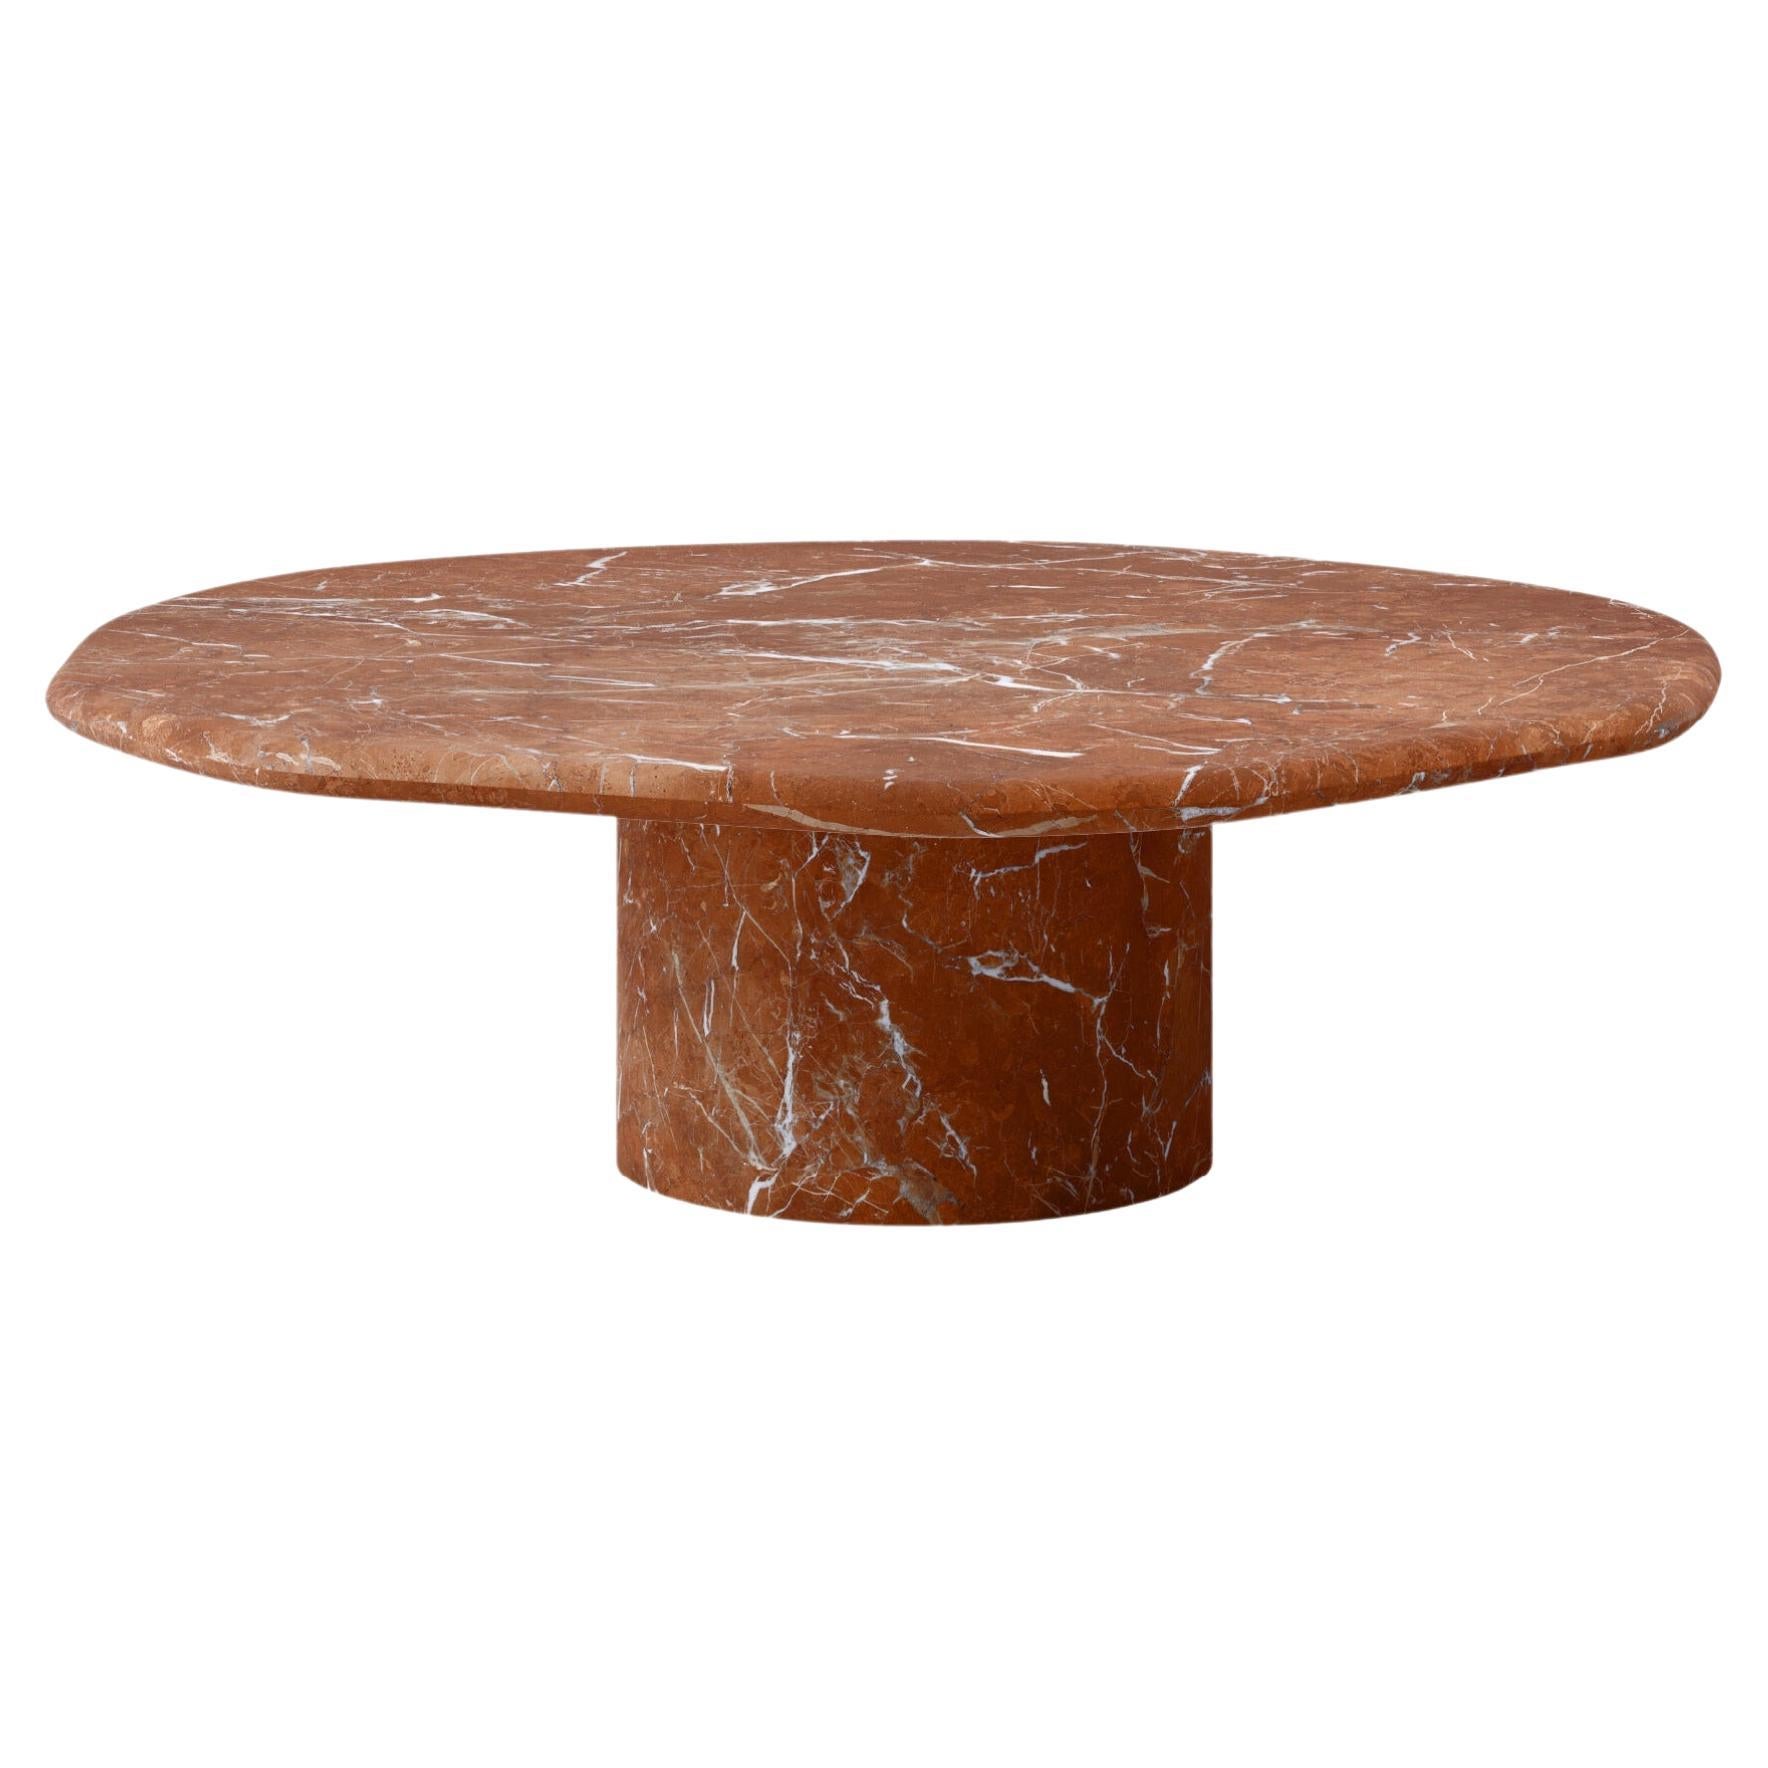 FORM(LA) Lago Round Coffee Table 42”L x 42”W x 14”H Rojo Alicante Marble For Sale